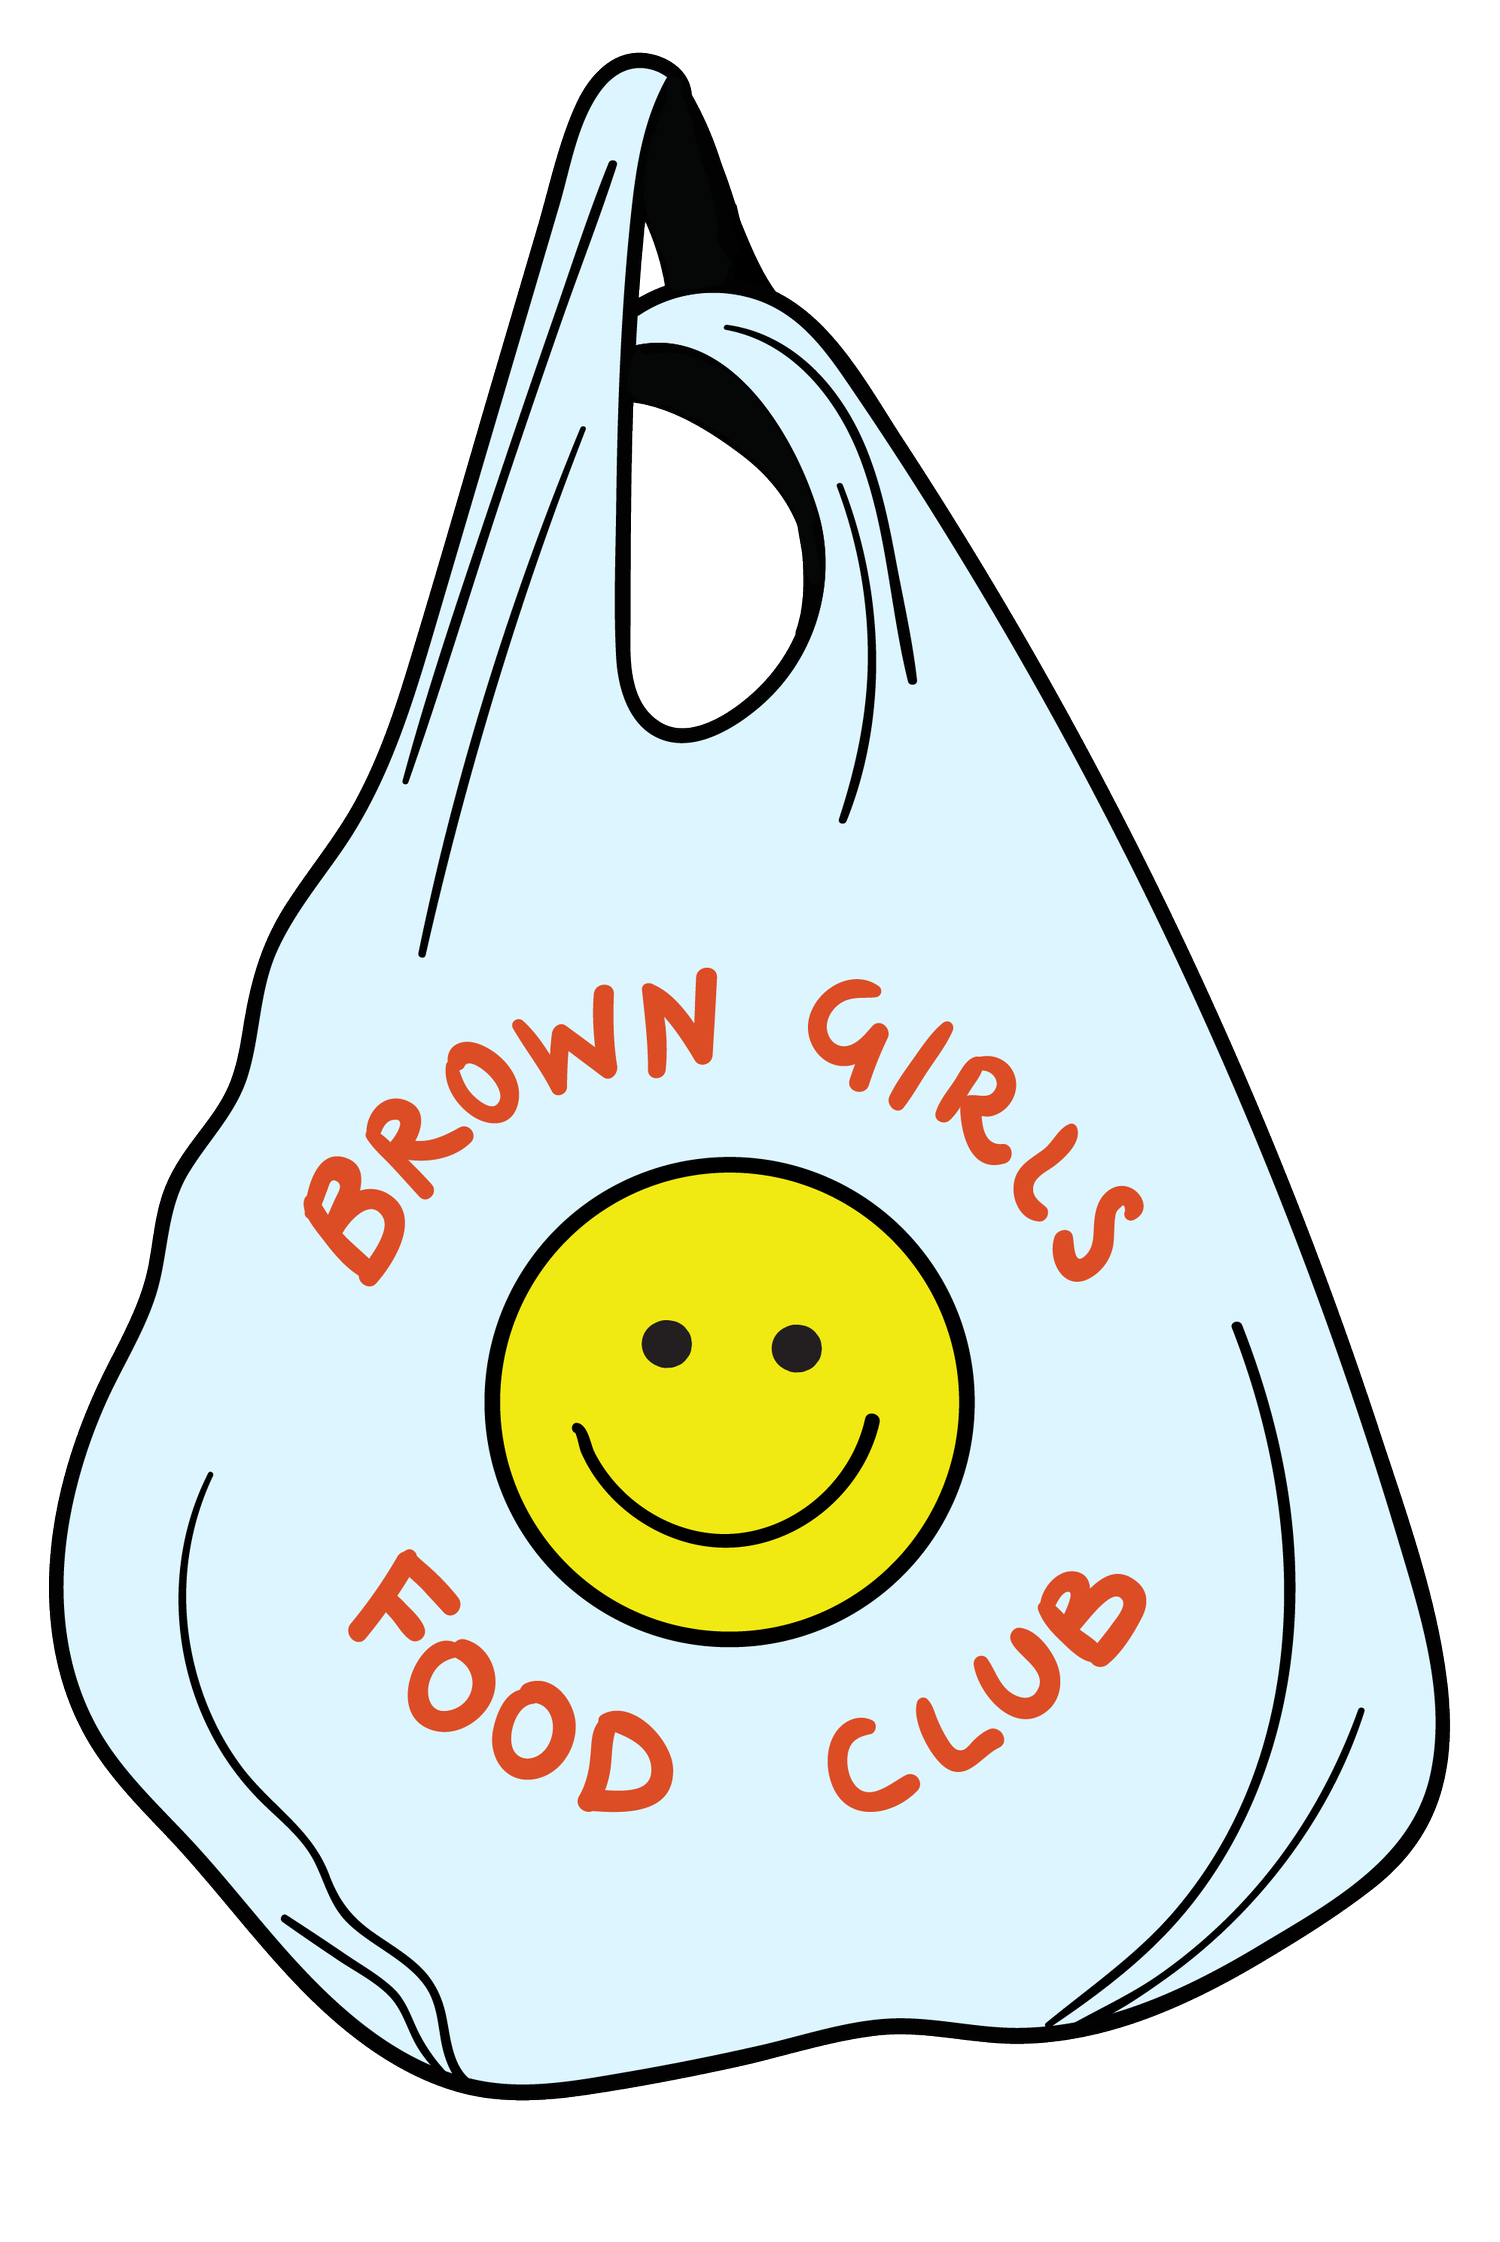 Brown Girls Food Club